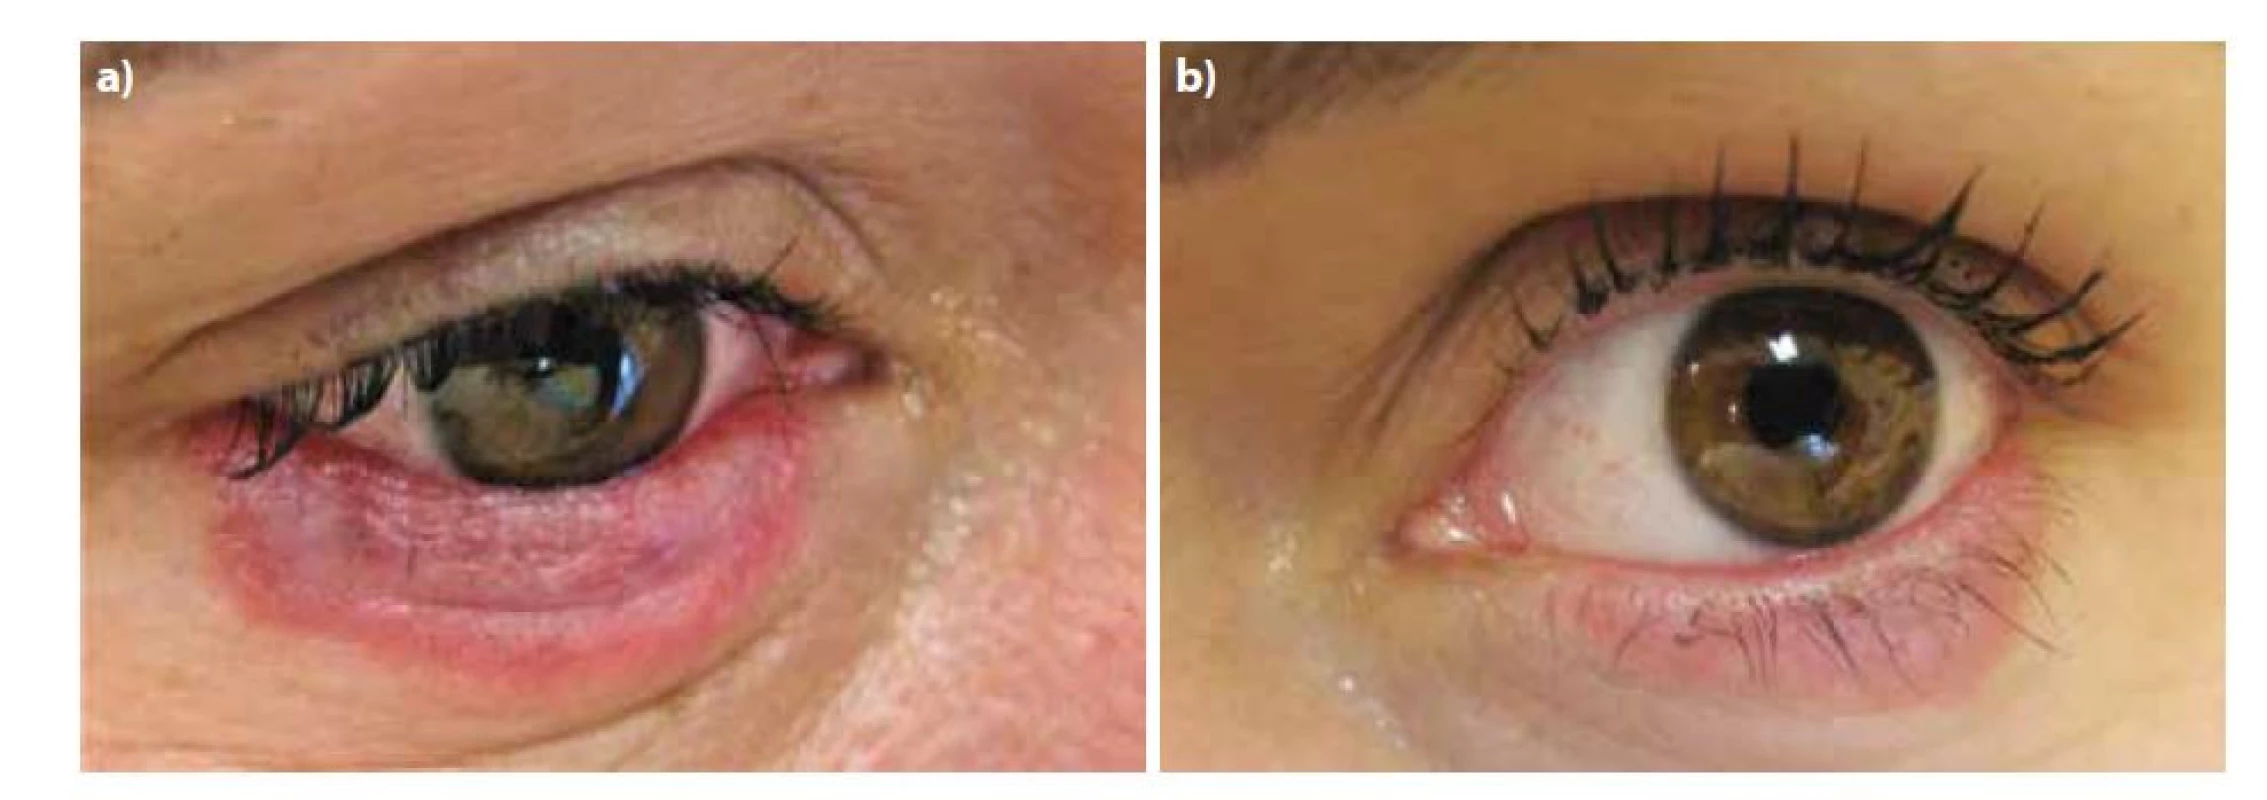 Postižení pravého (1a) a levého (1b) očního víčka při prvním vyšetření